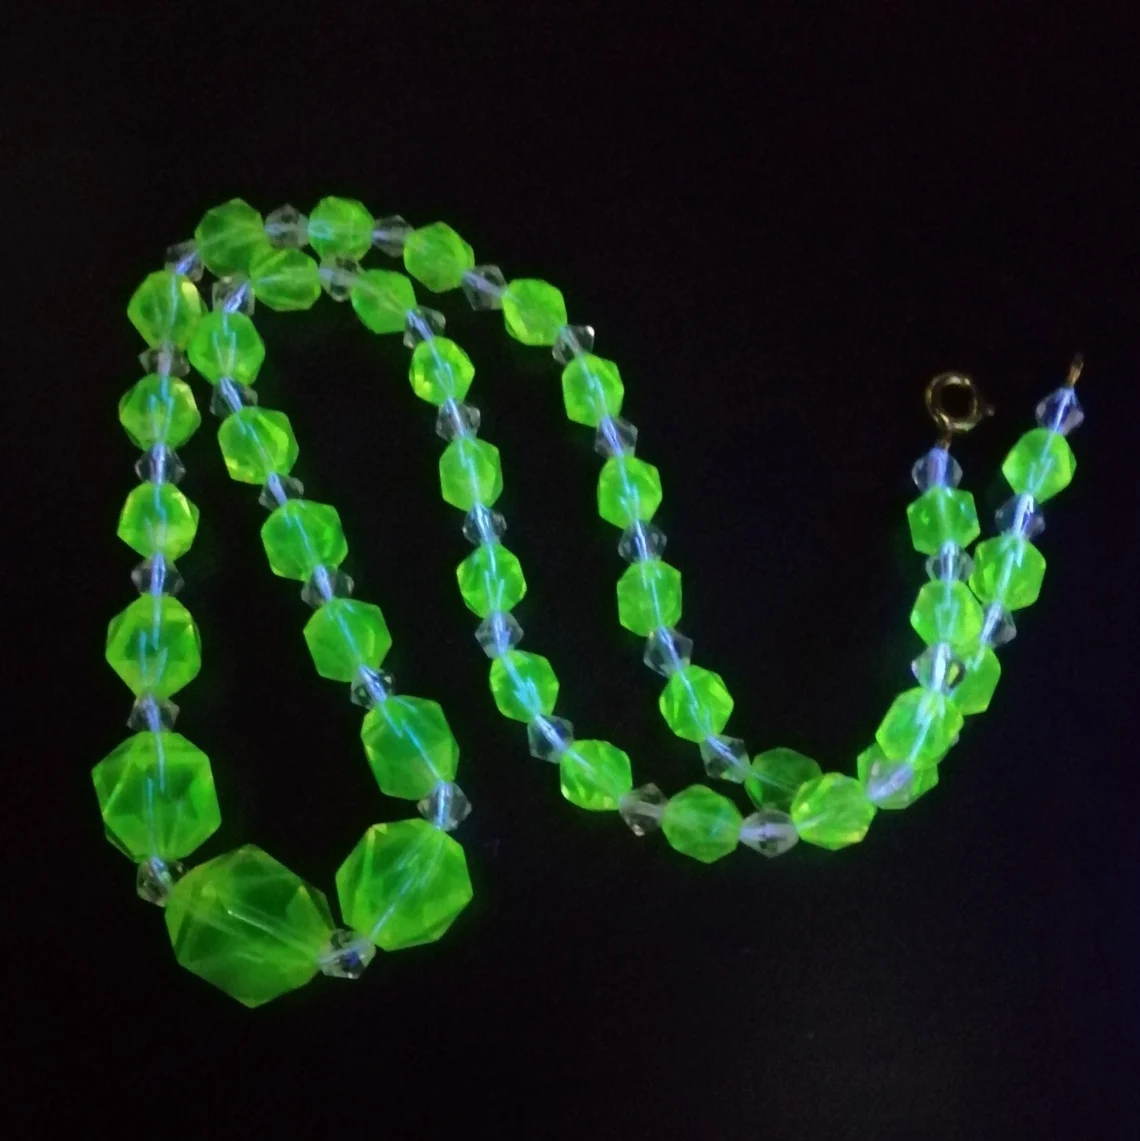 Vintage Czech Art Deco necklace rare Uranium faceted glass beads